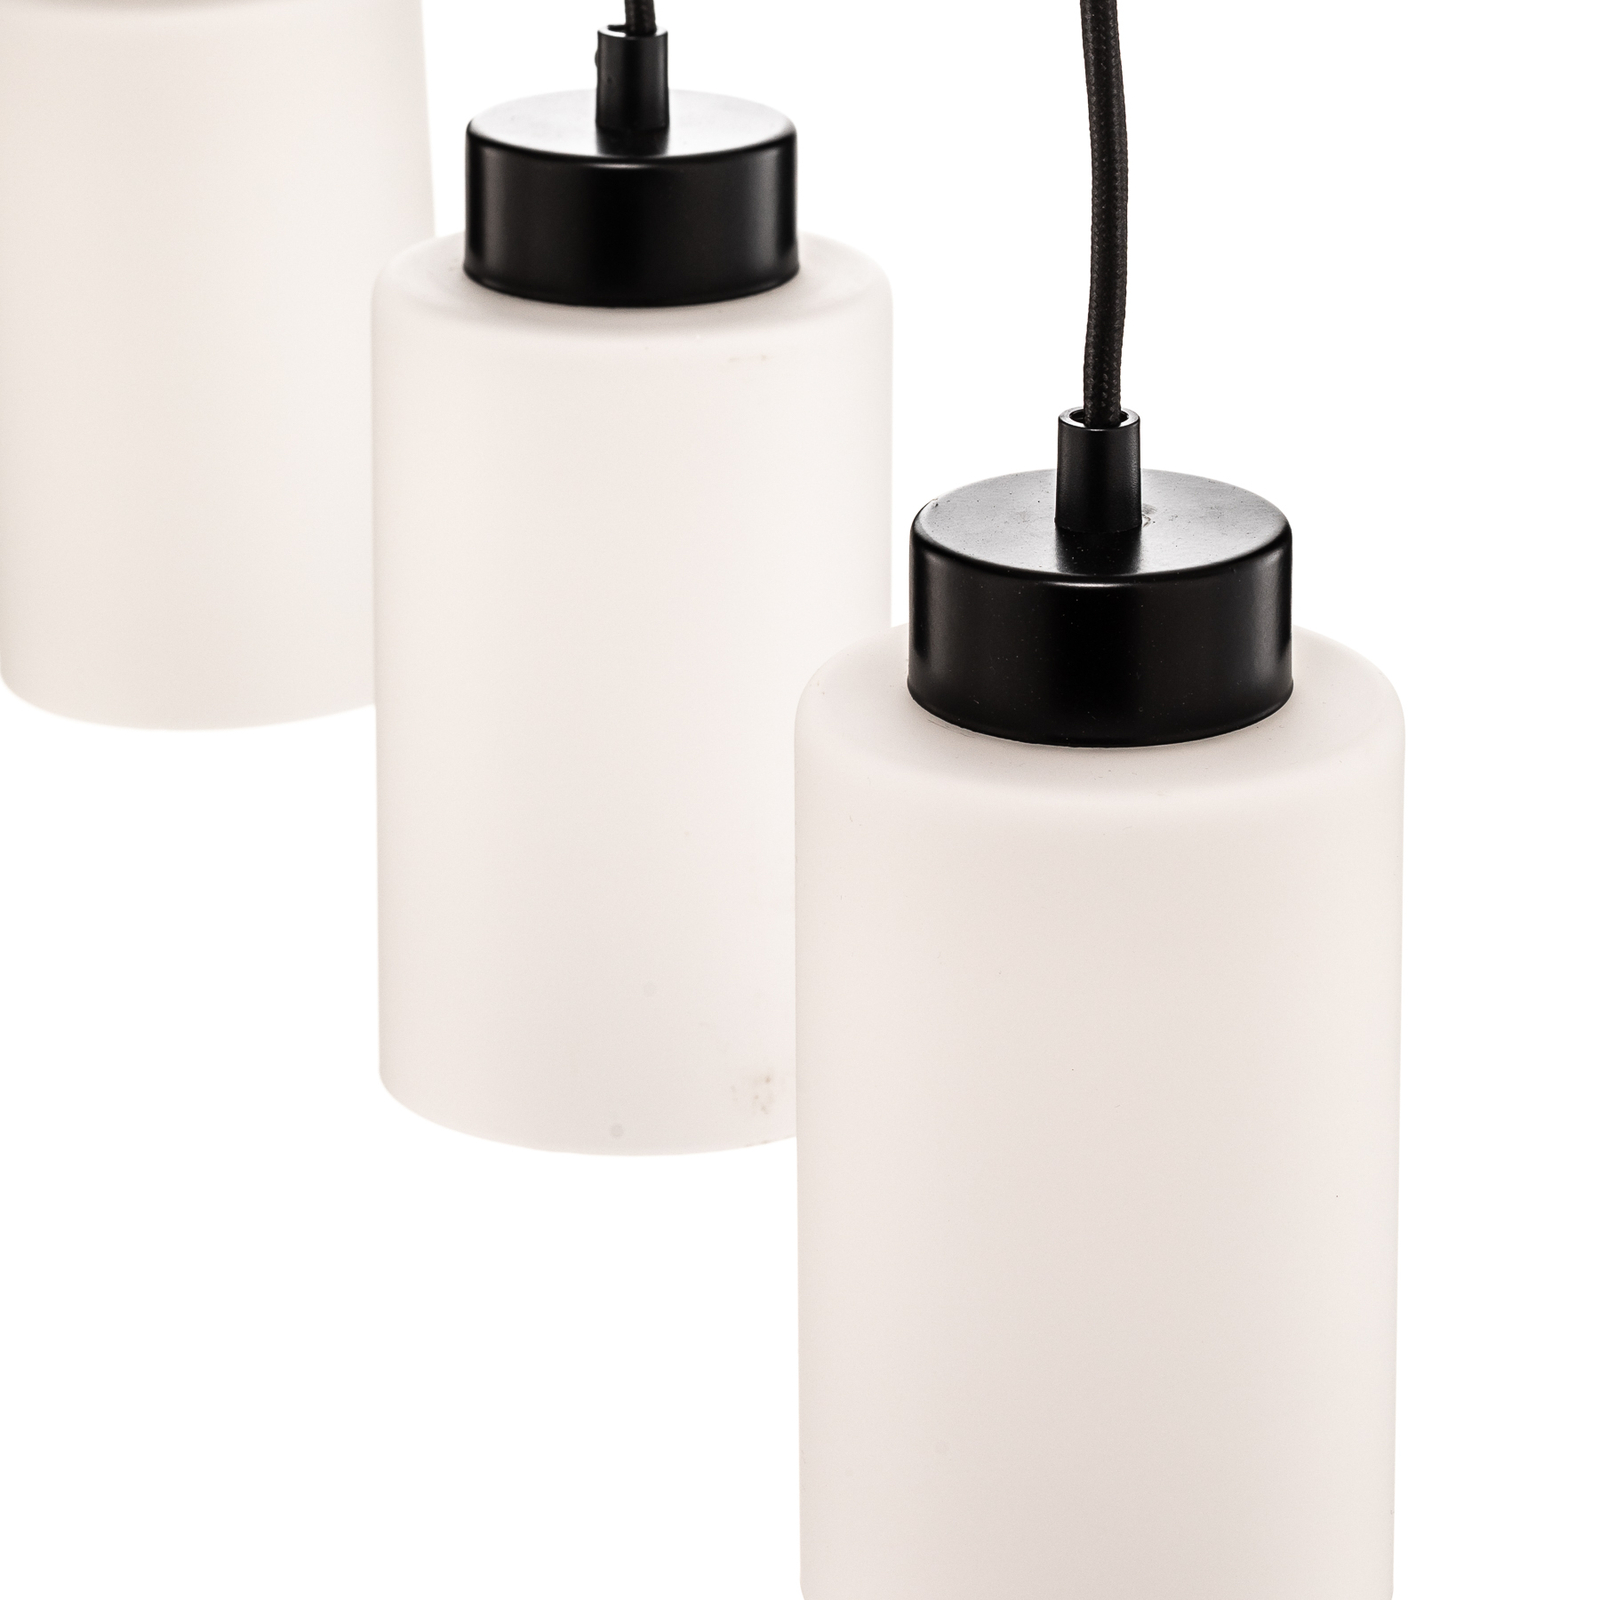 Suspension Vitrio, 3 lampes, allongée, noir/blanc